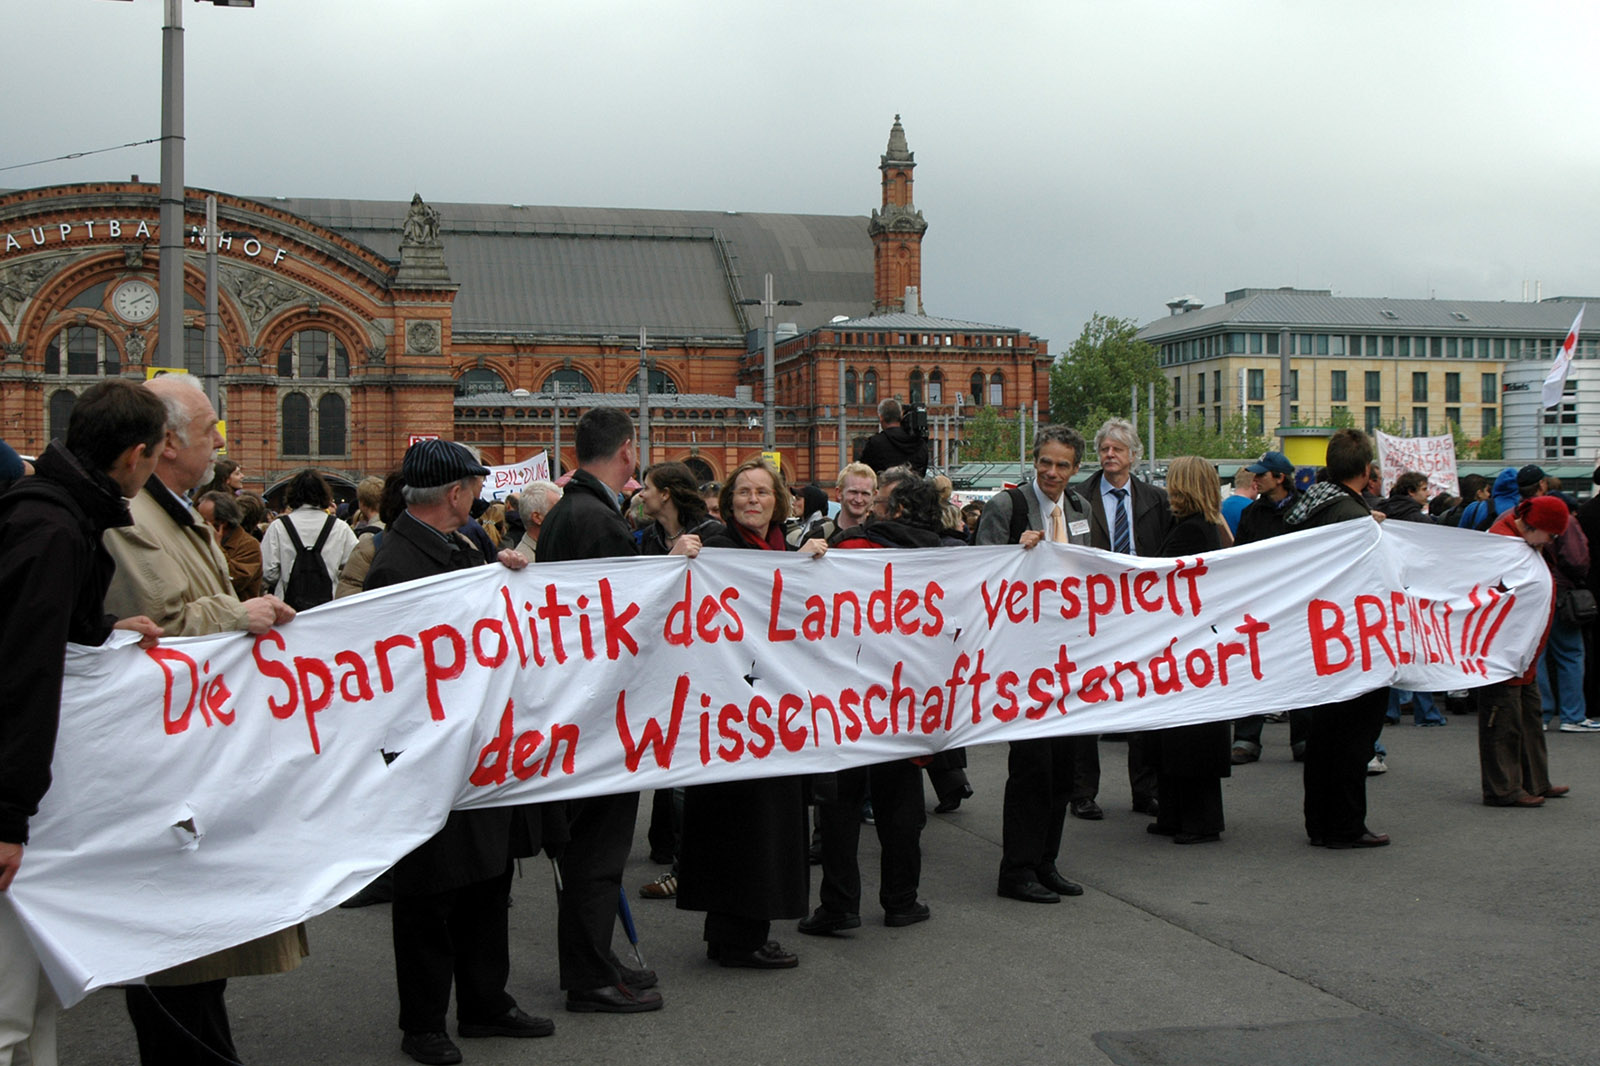 Vor dem Bremer Bahnhof steht eine Gruppe von Menschen, die ein Spruchband hochhalten mit dem Worten: „Die Sparpolitik des Landes verspielt den Wissenschaftsstandort Bremen“.